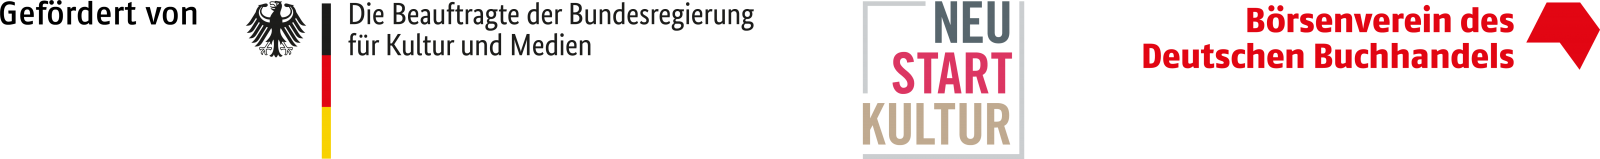 Logografik der Fördergeber (Neustart Kultur, die Bundesregierung)